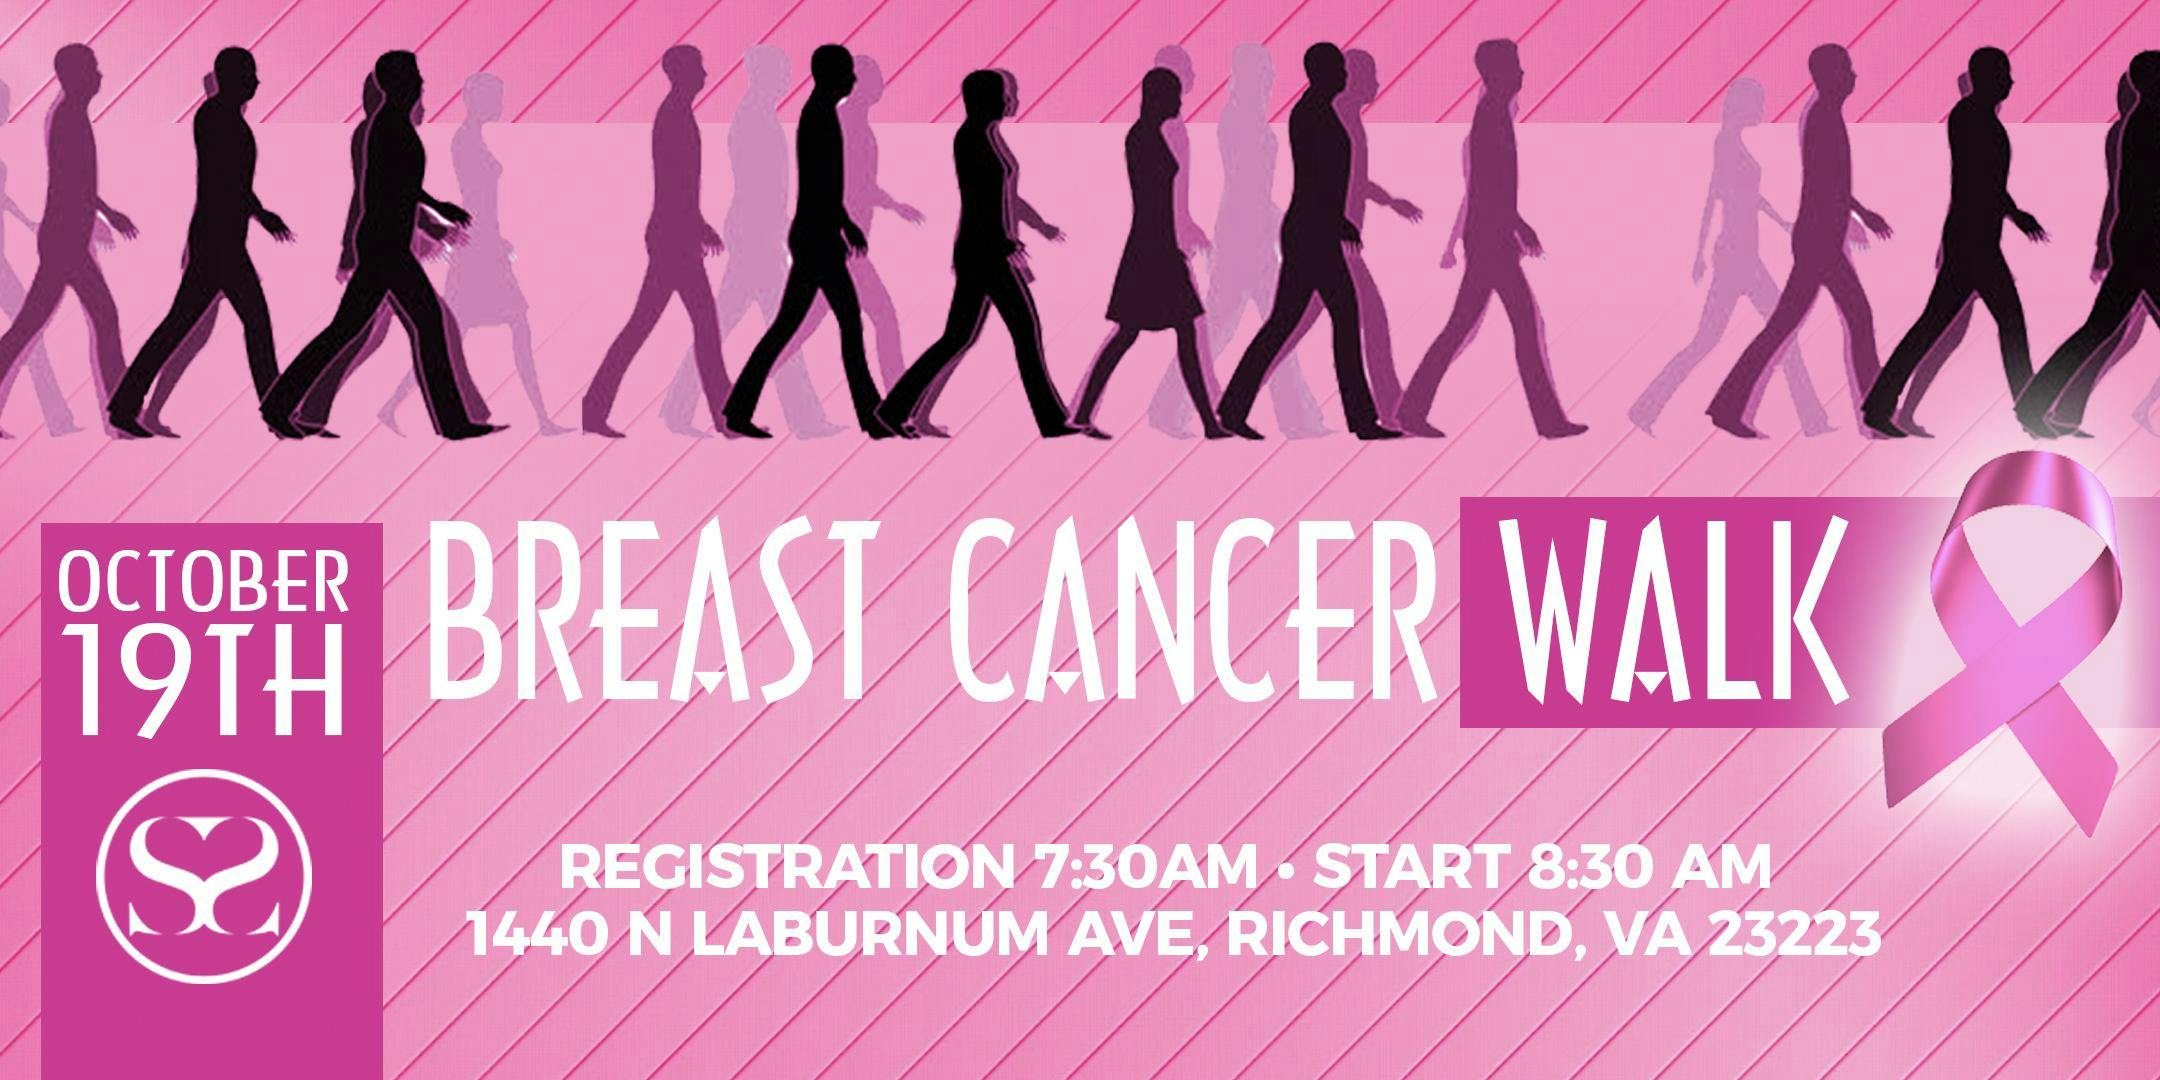 SSM WAR 5K Breast Cancer Walk